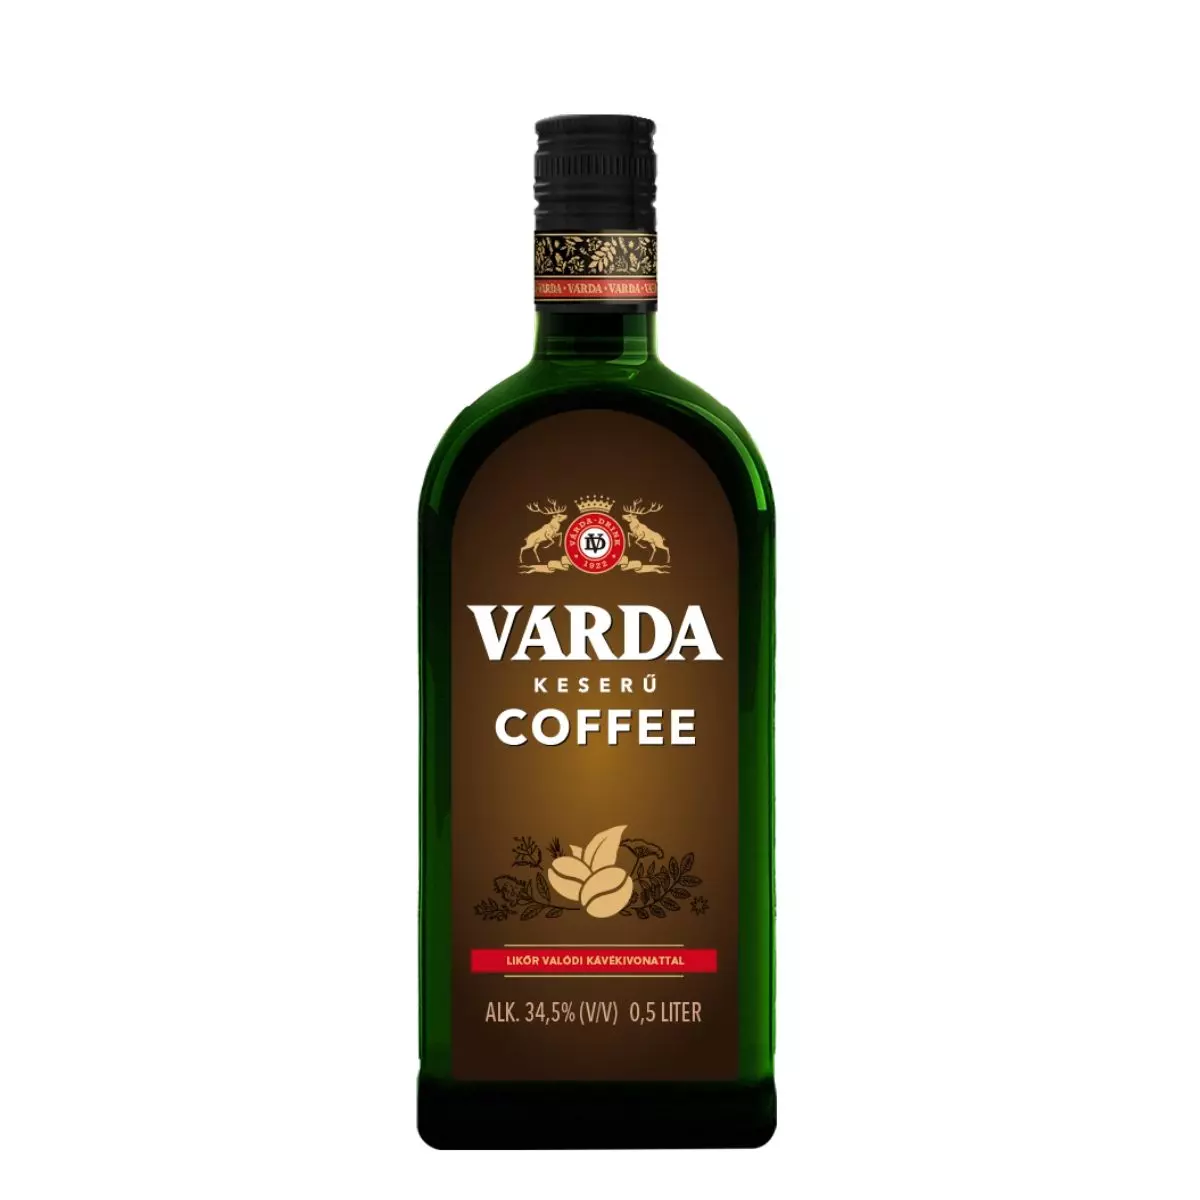 Várda Keserű Coffee (0,5L / 34,5%)